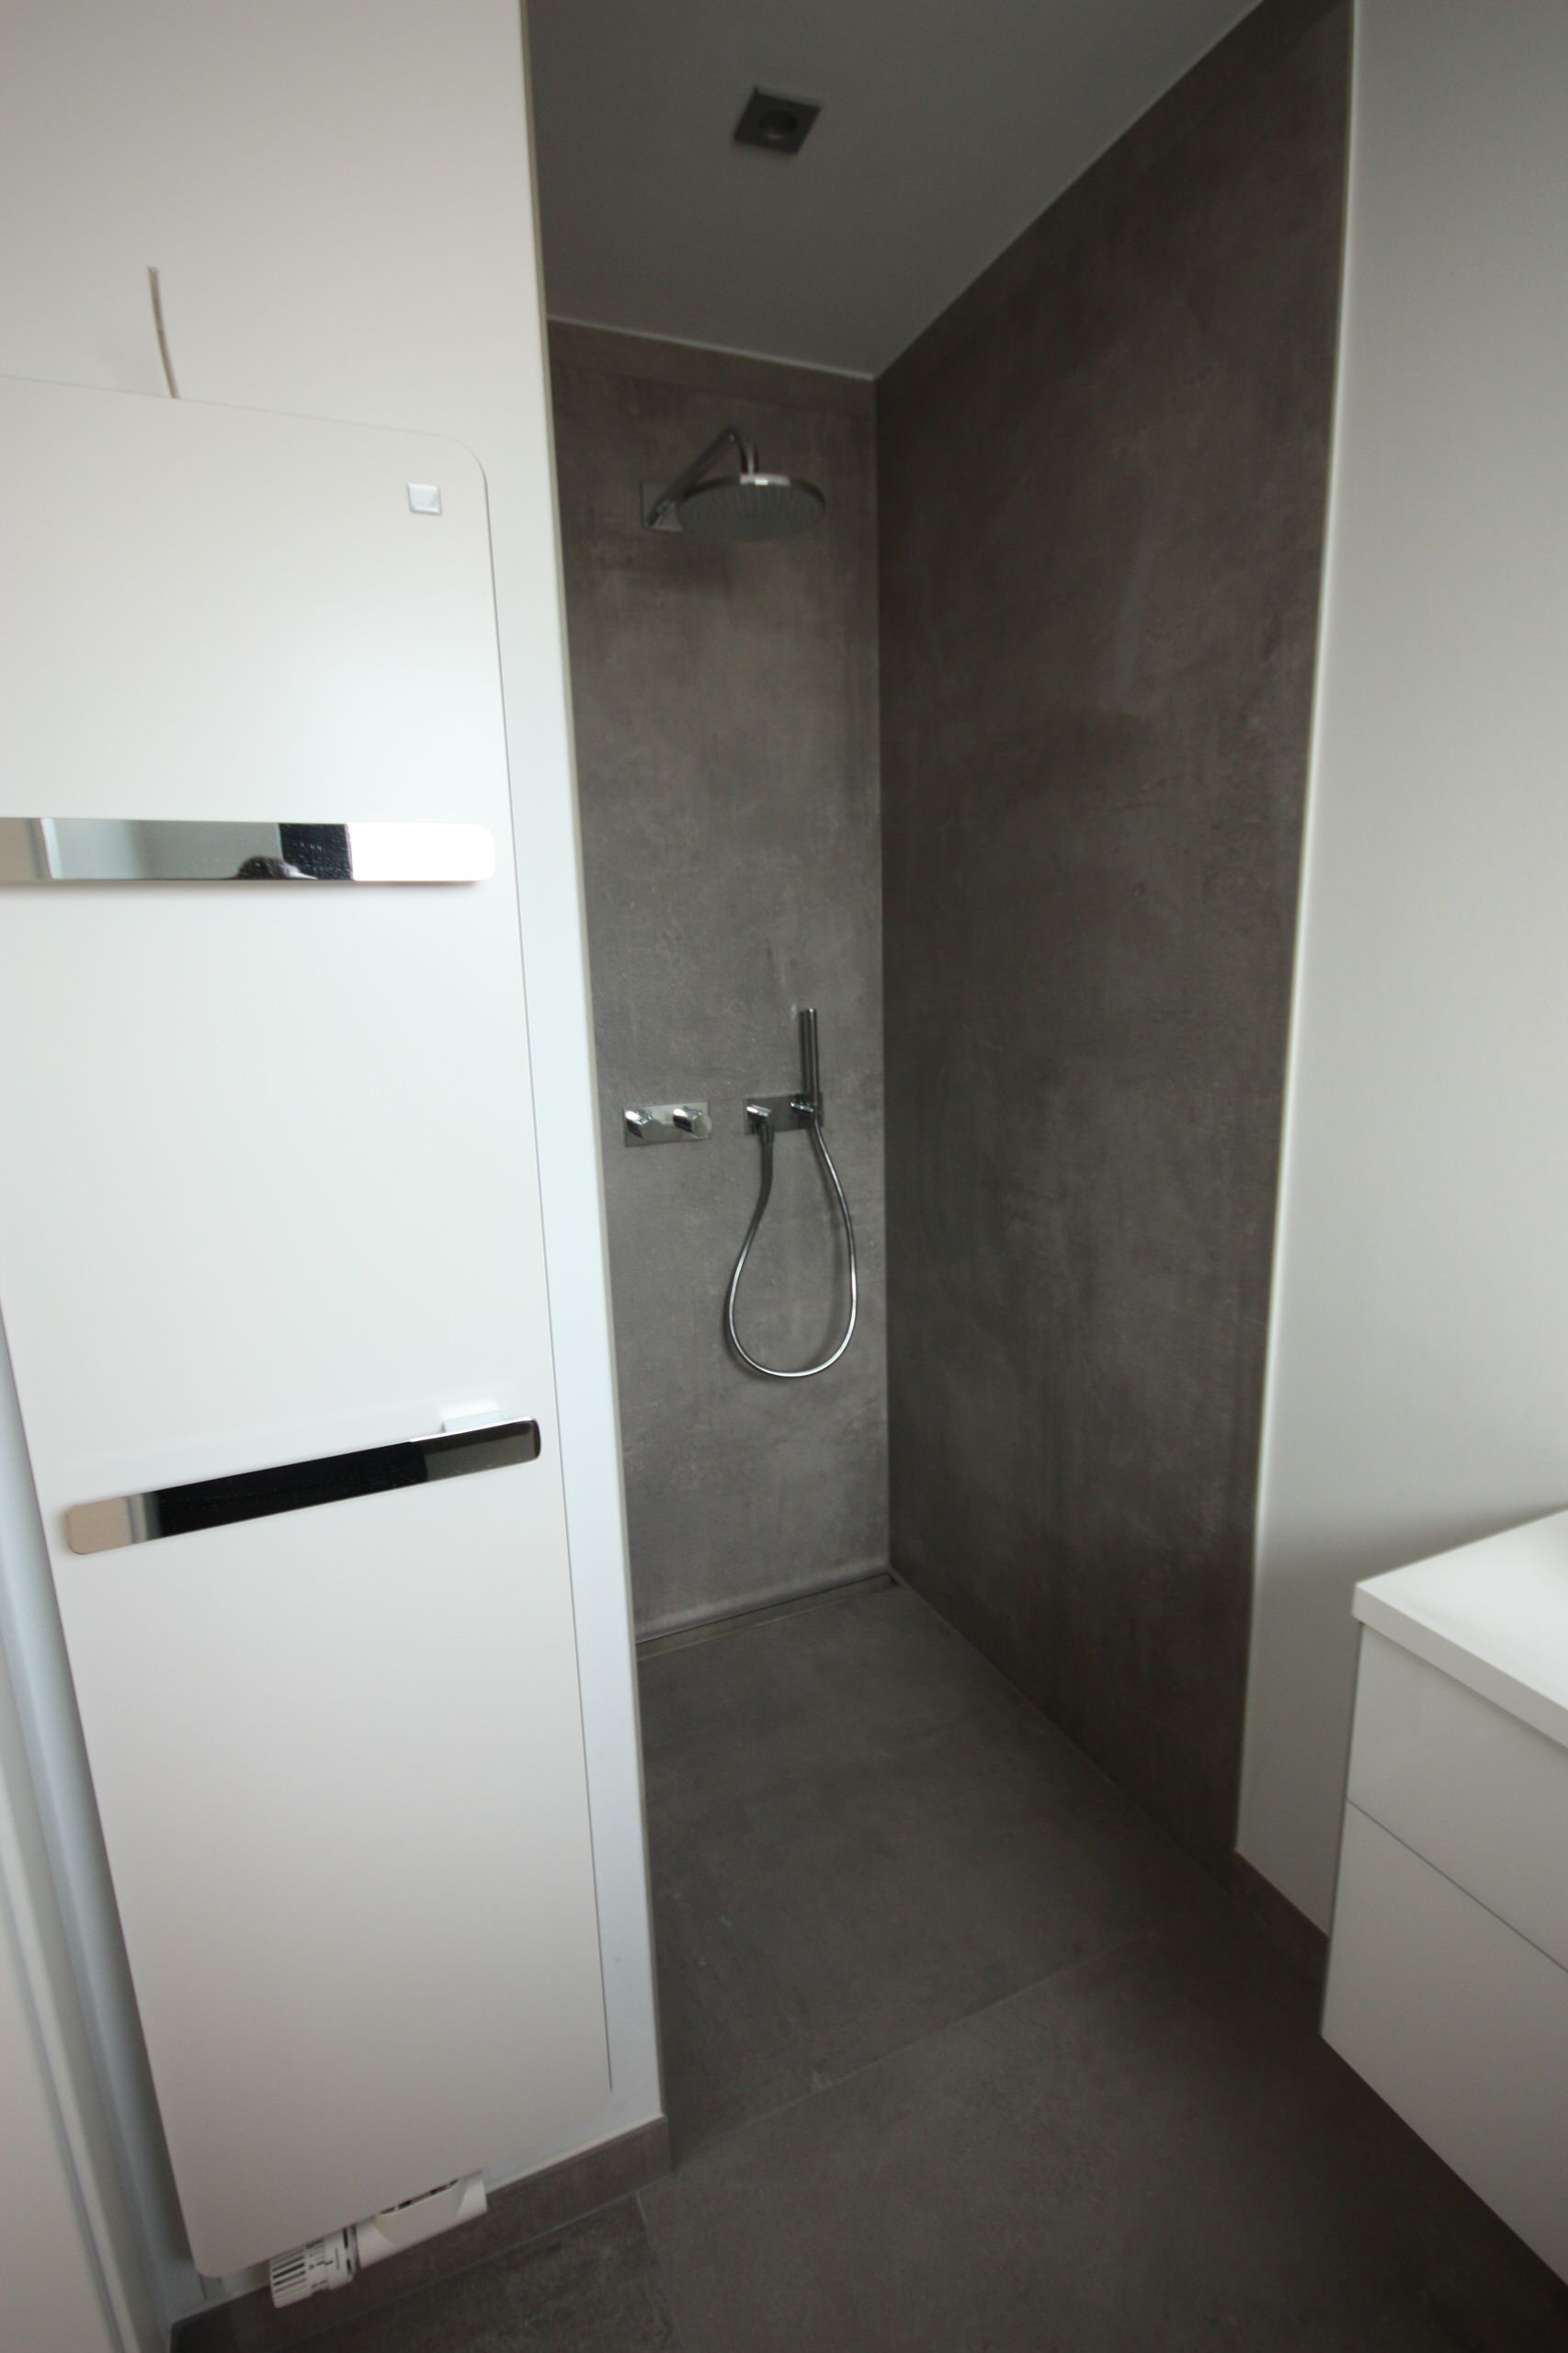 Neubau Bad/WC Großformat 120x240 cm - Contemporary - Bathroom - Frankfurt -  by Fliesen Schmidt GmbH | Houzz